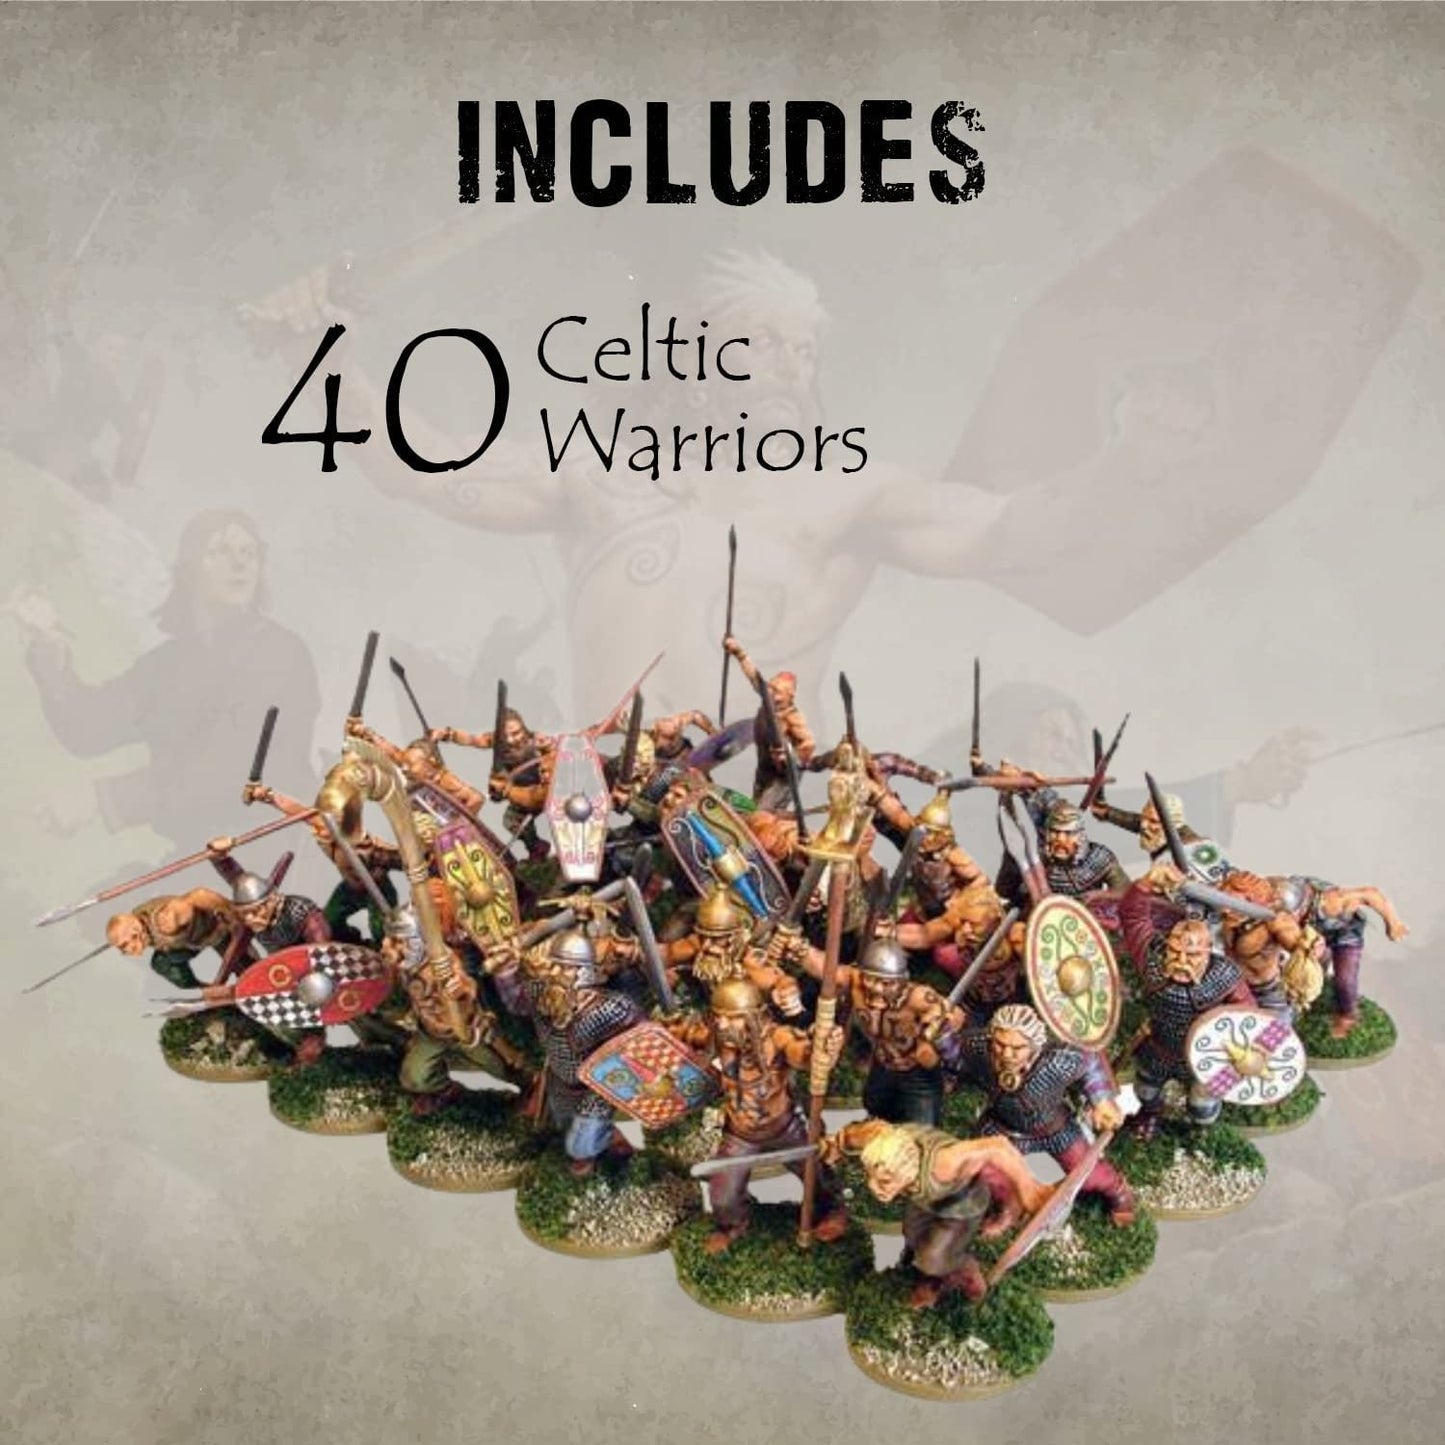 Hail Caesar - Ancient Celts: Celtic Warriors